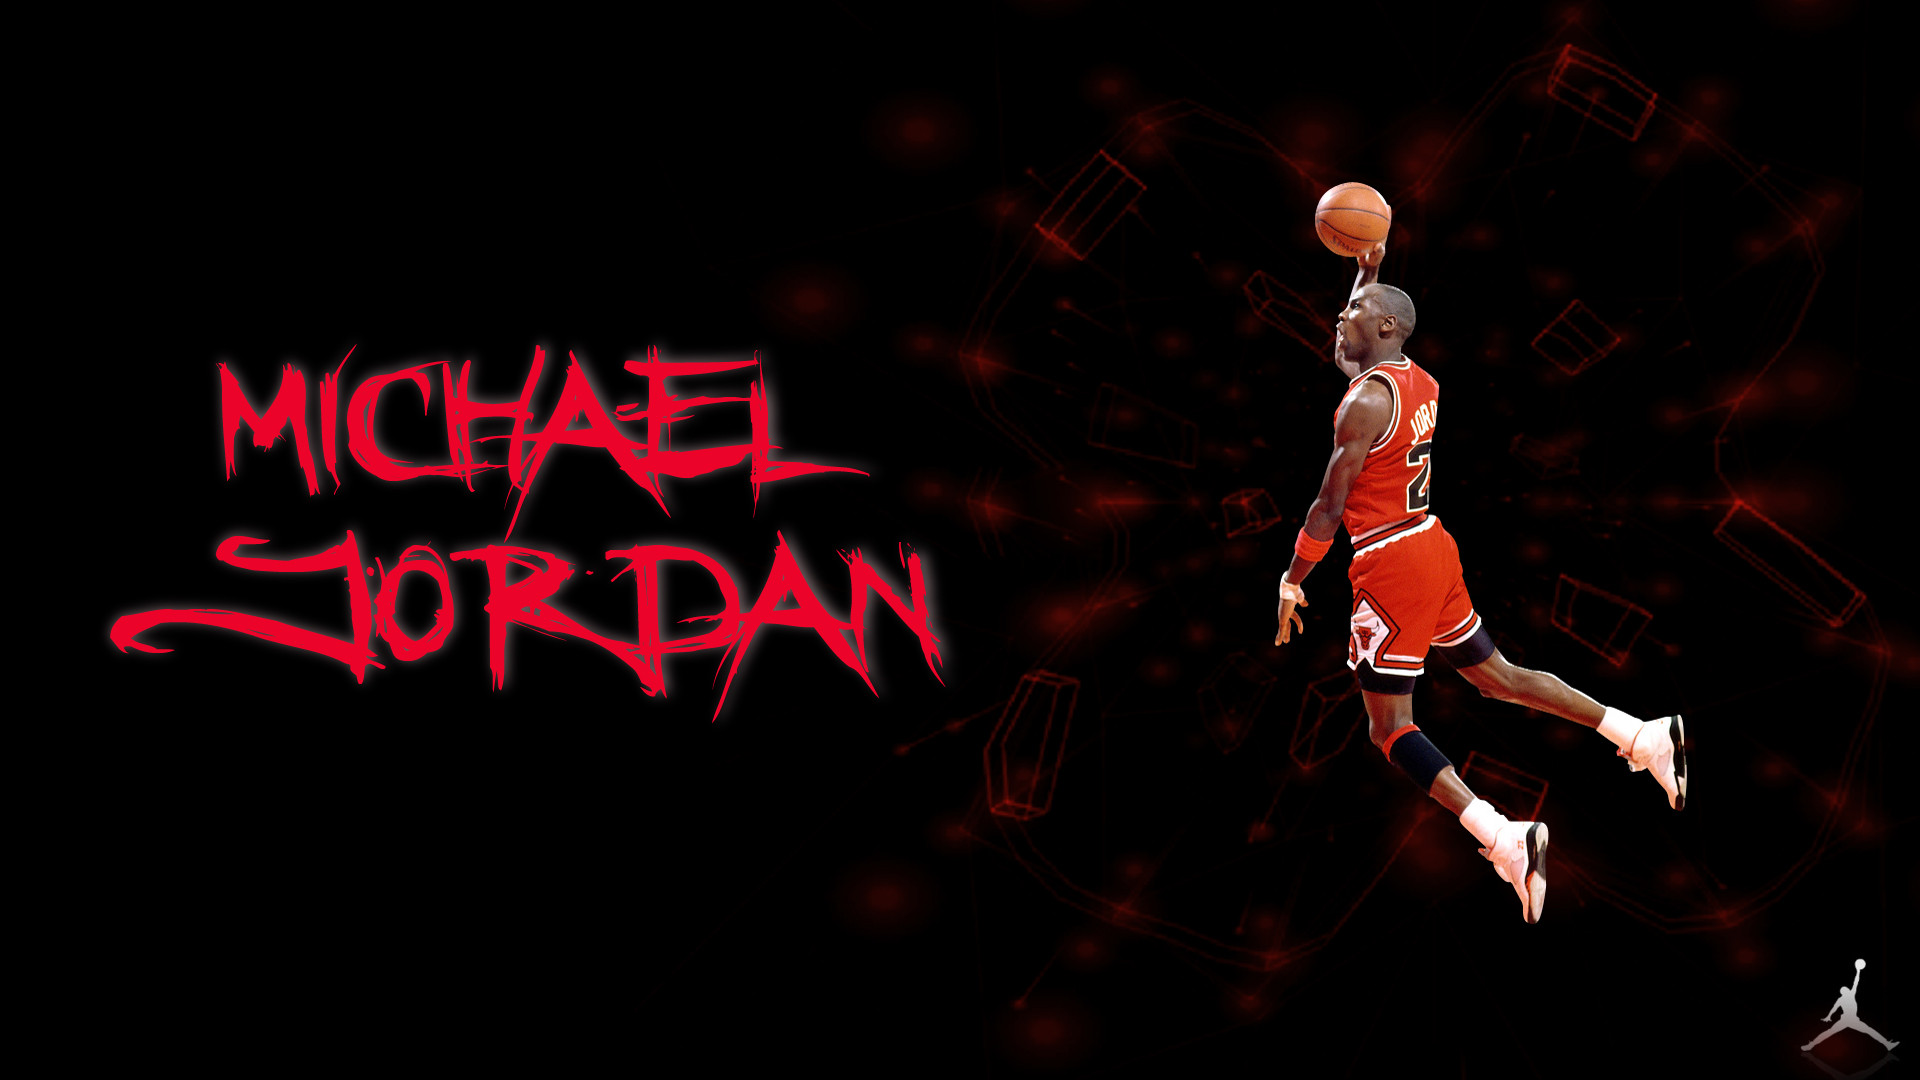 34 HD Air Jordan Logo Wallpapers For